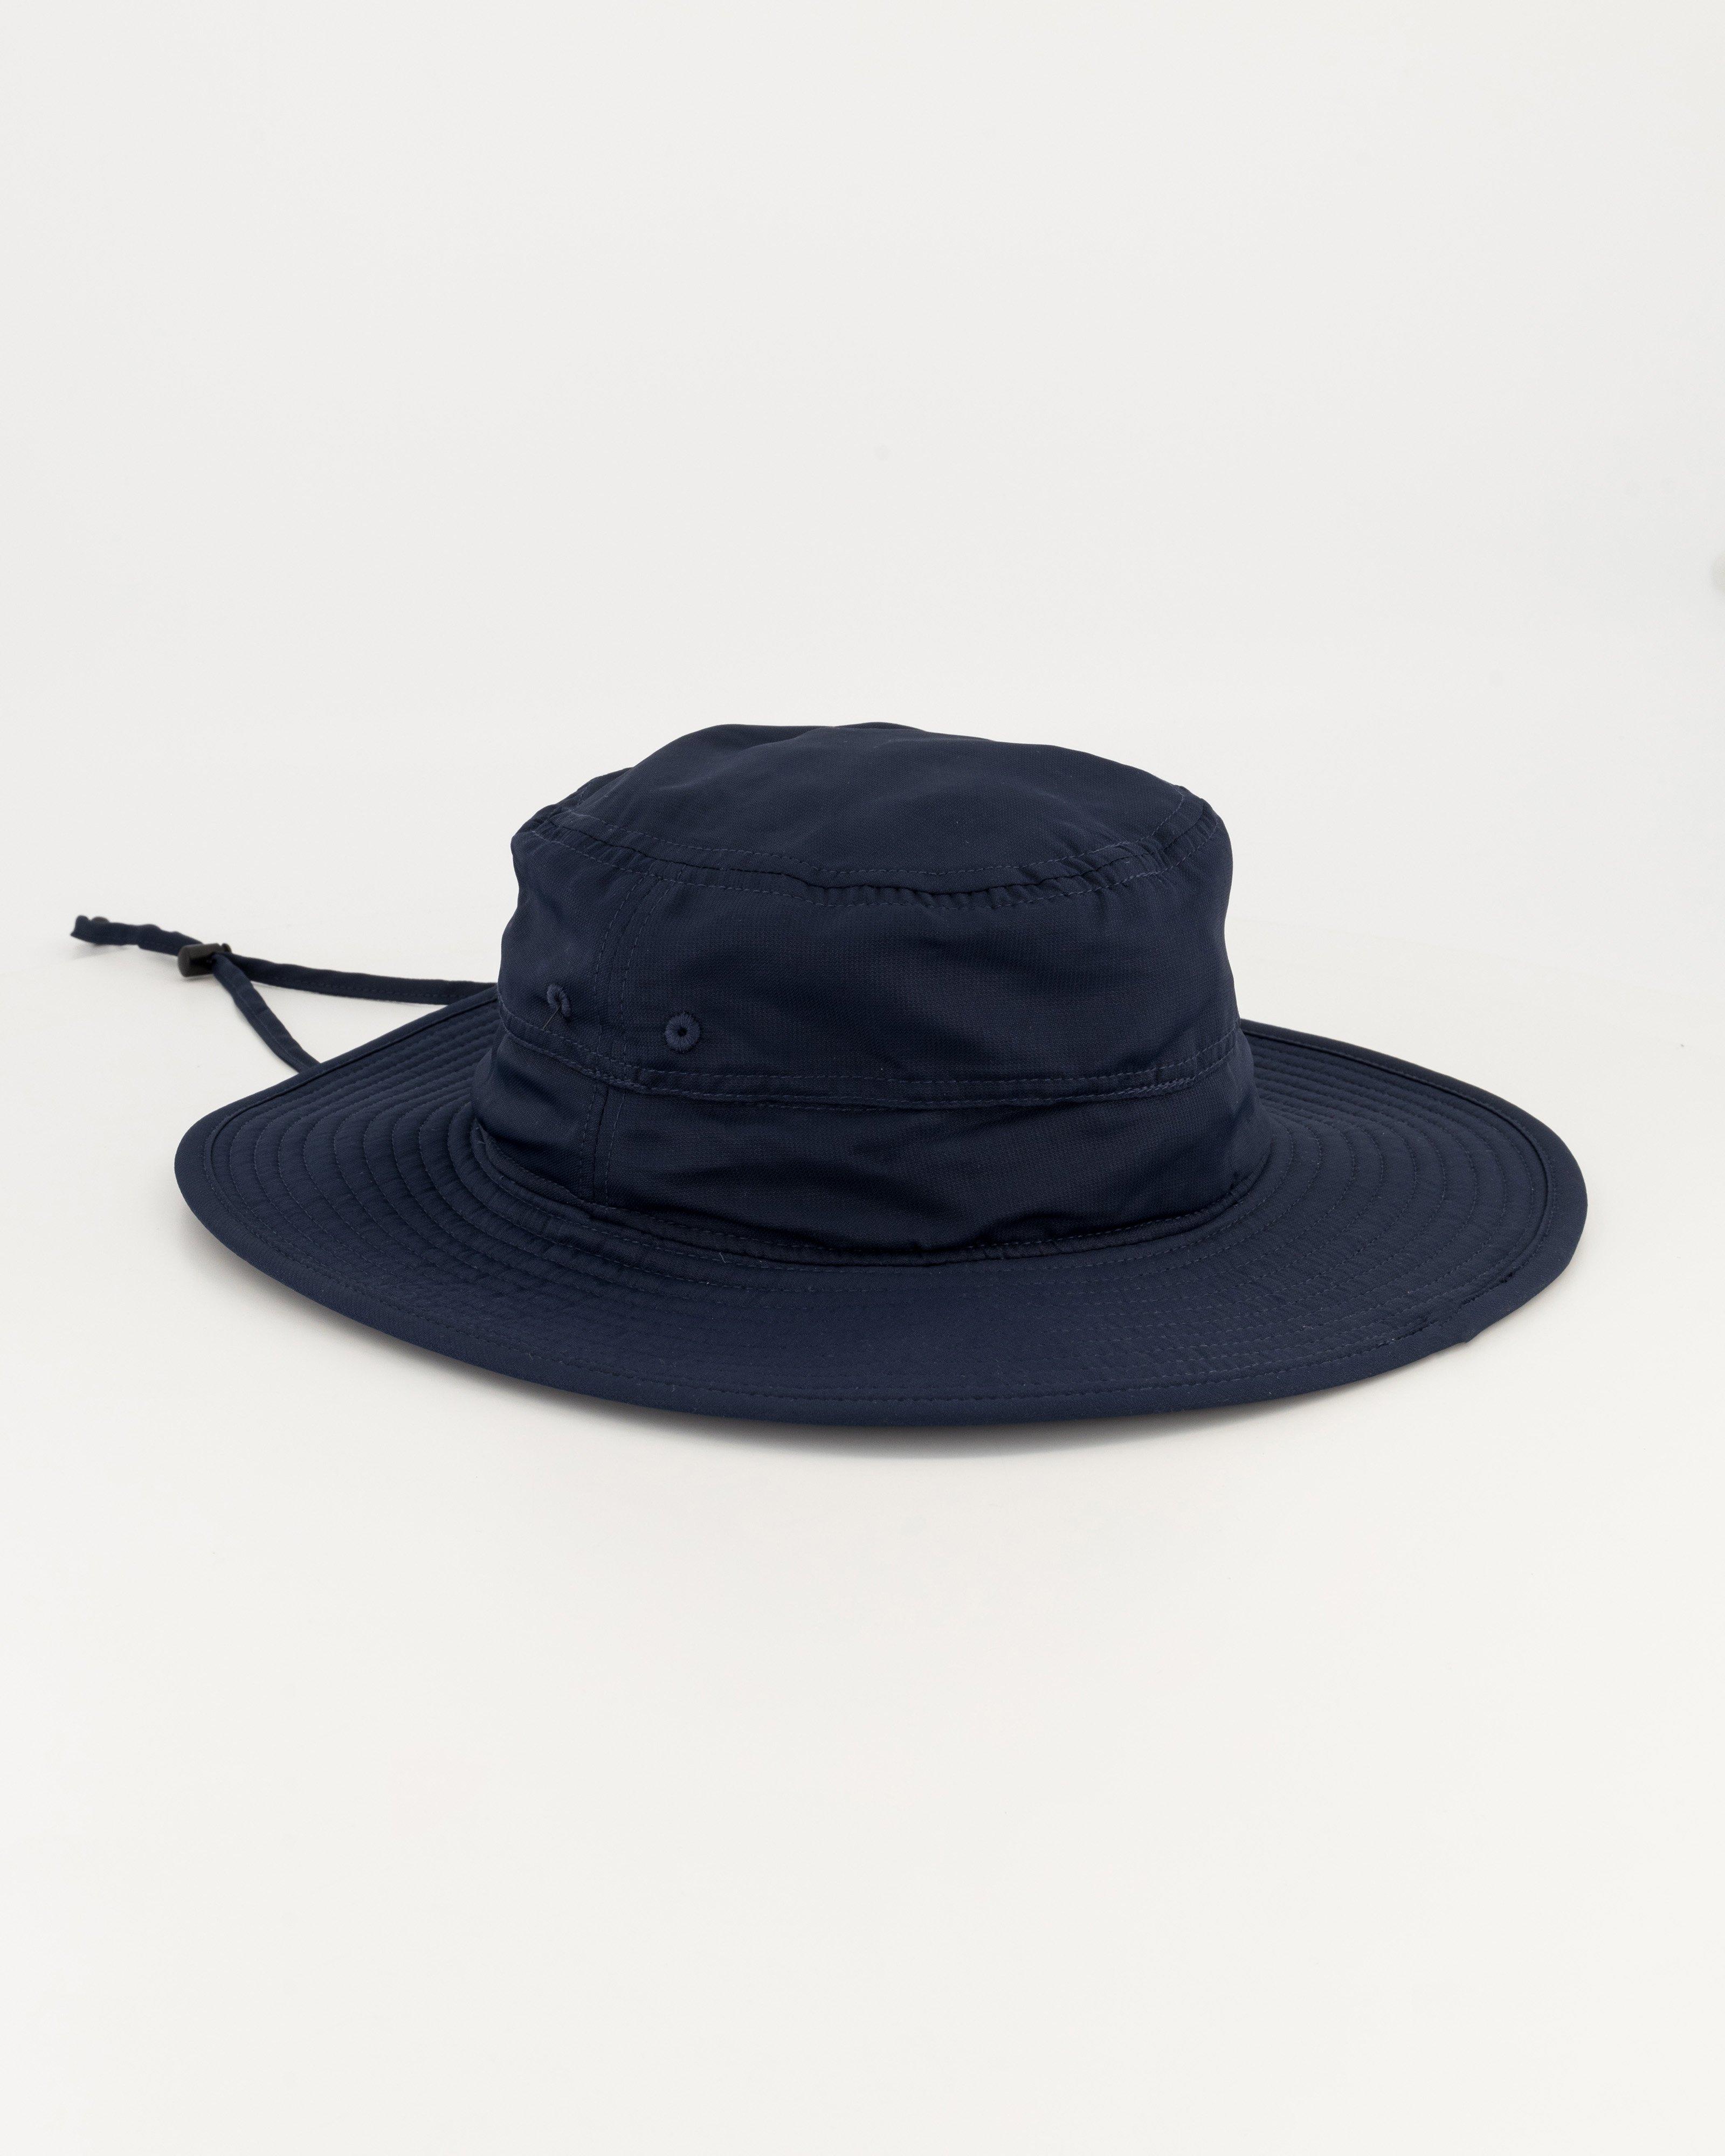 Men's Hats  Sun, Floppy & Hiking Hats - Cape Union Mart